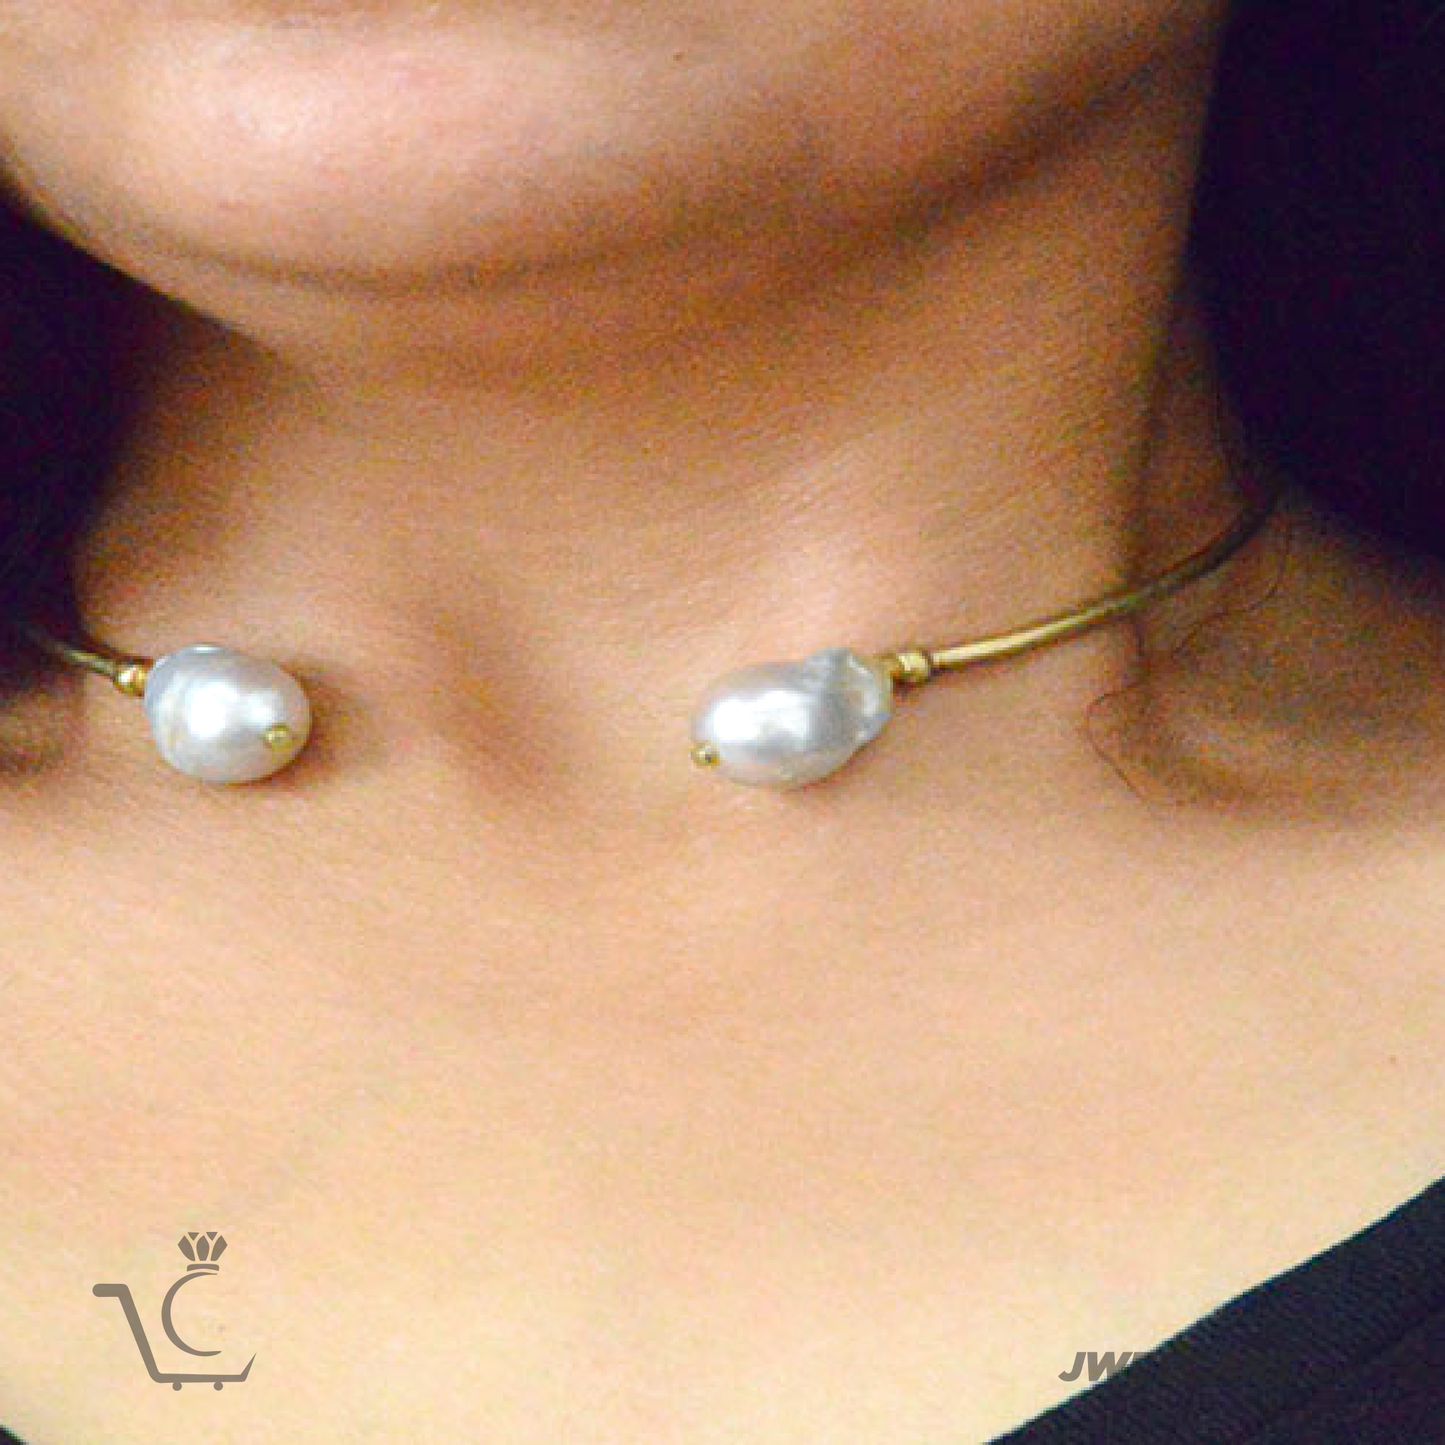 women wearing pearl choker necklace